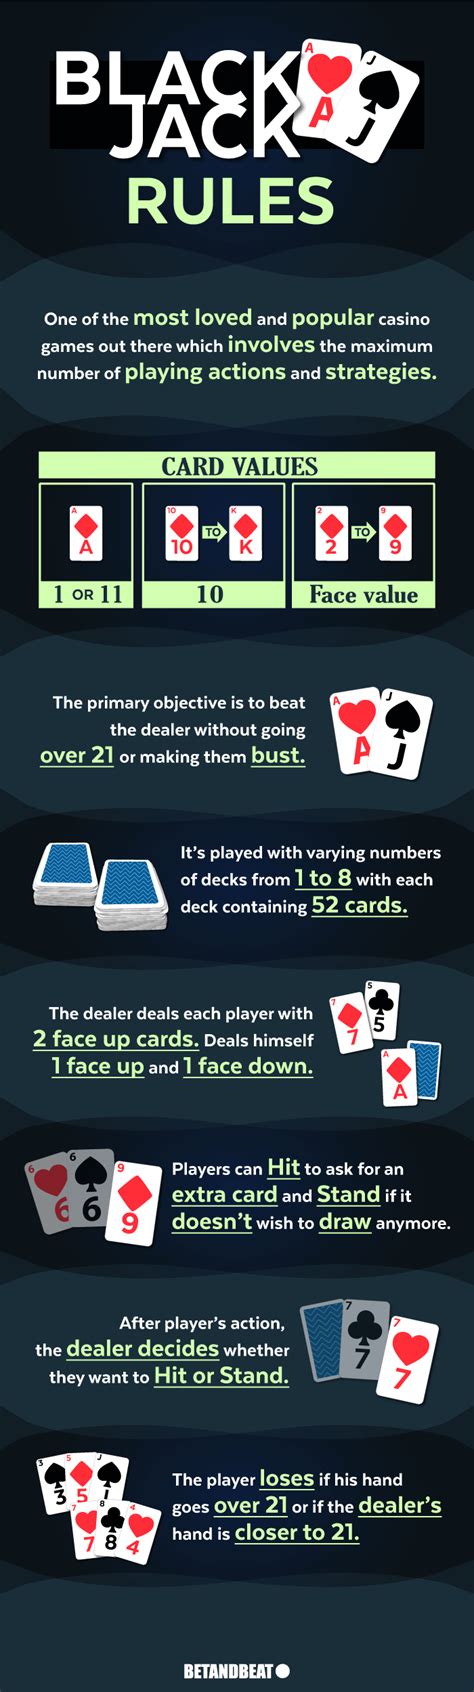 blackjack cards rules